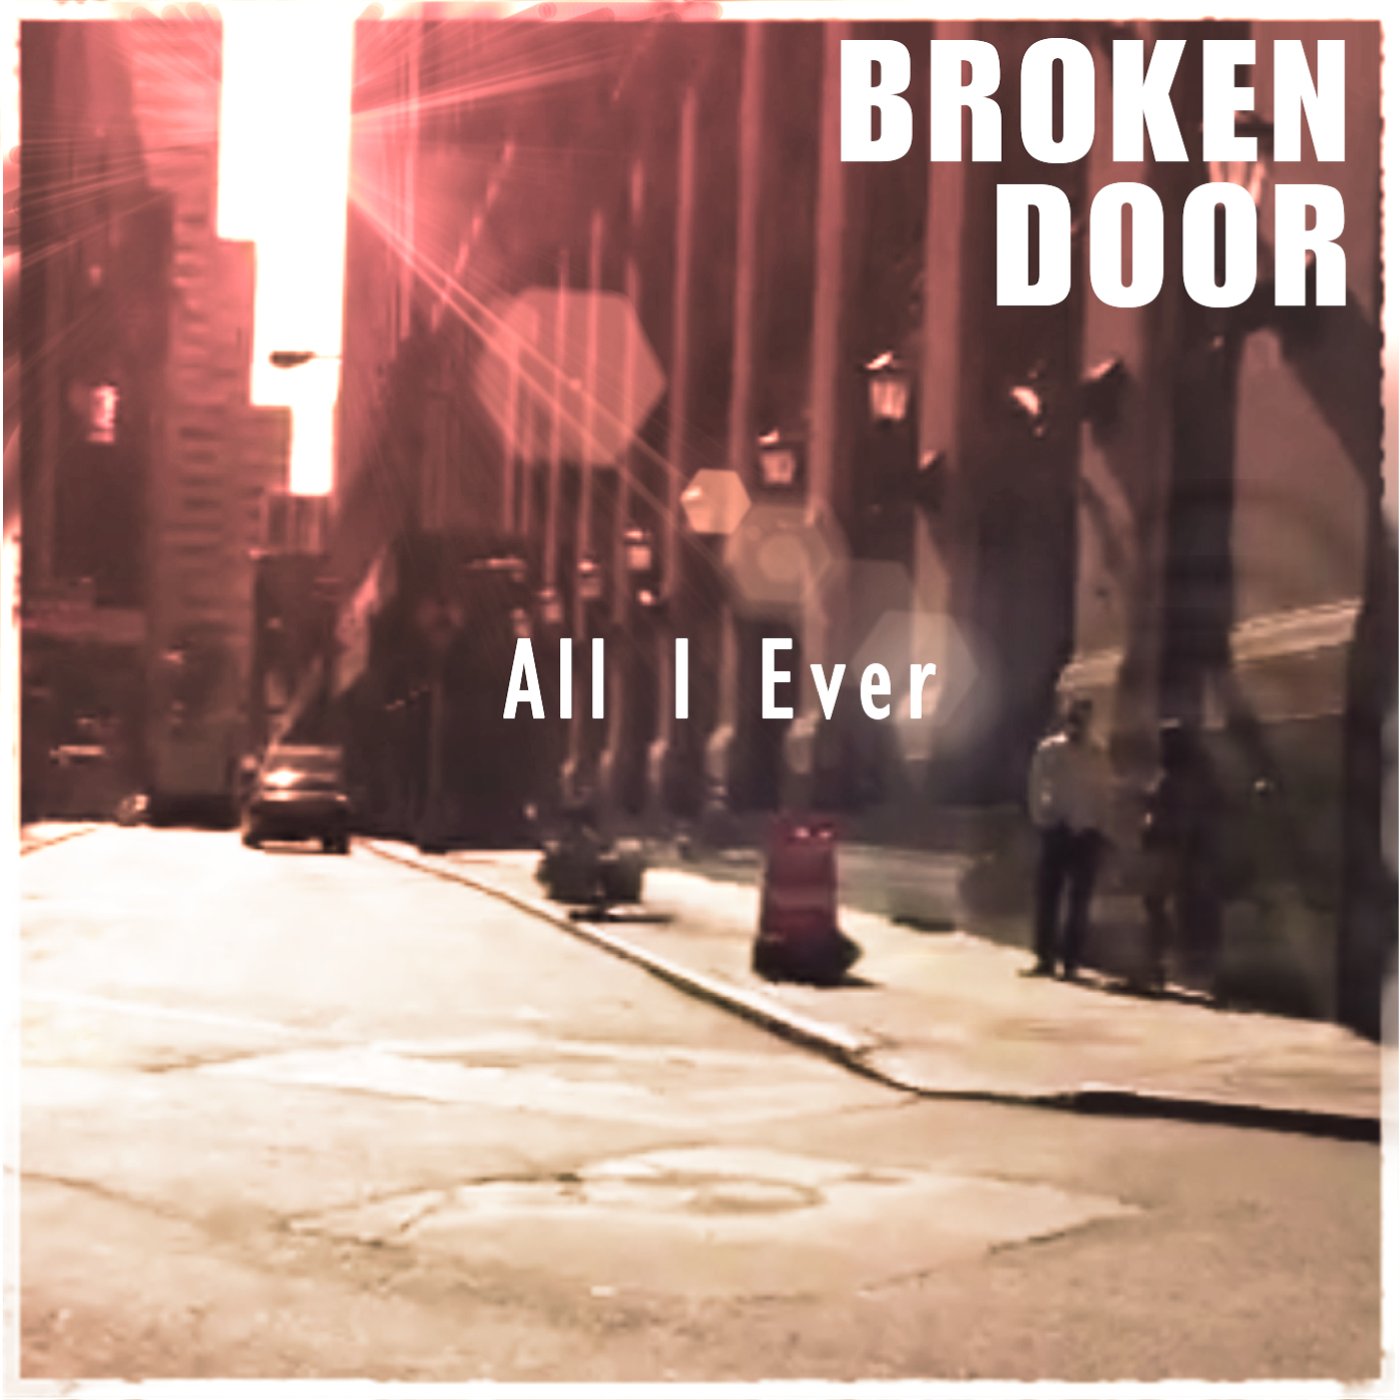 Broken Door. I broken. Broken Door Music. The Door is broken. Broken without you